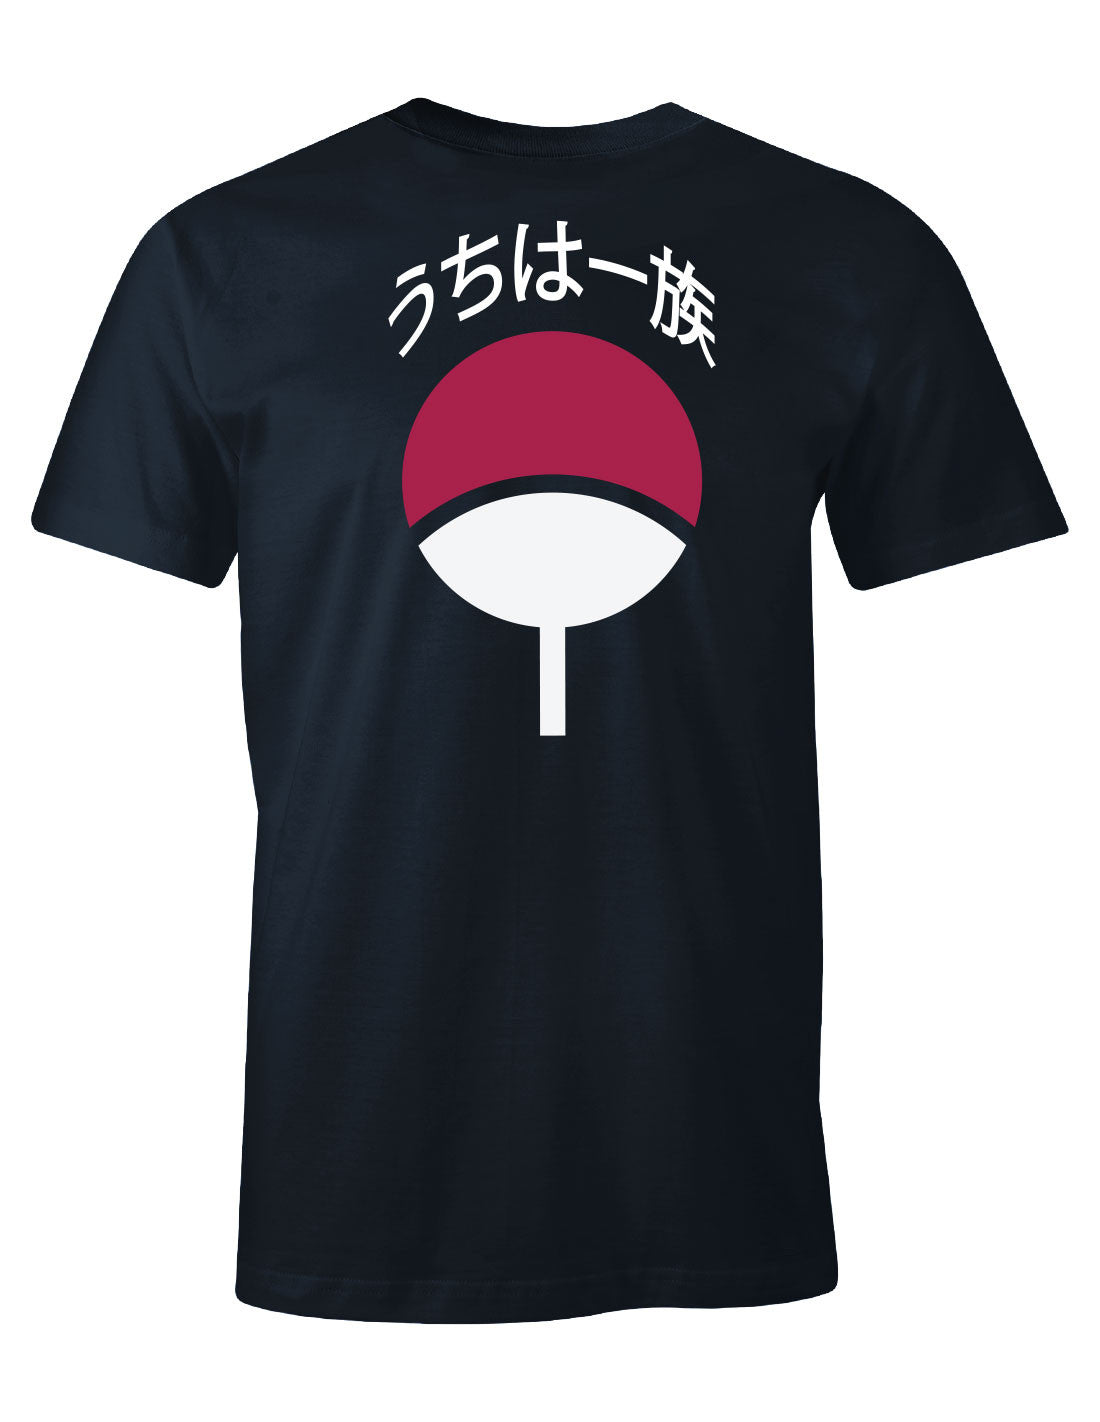 Naruto t-shirt - Uchiha House